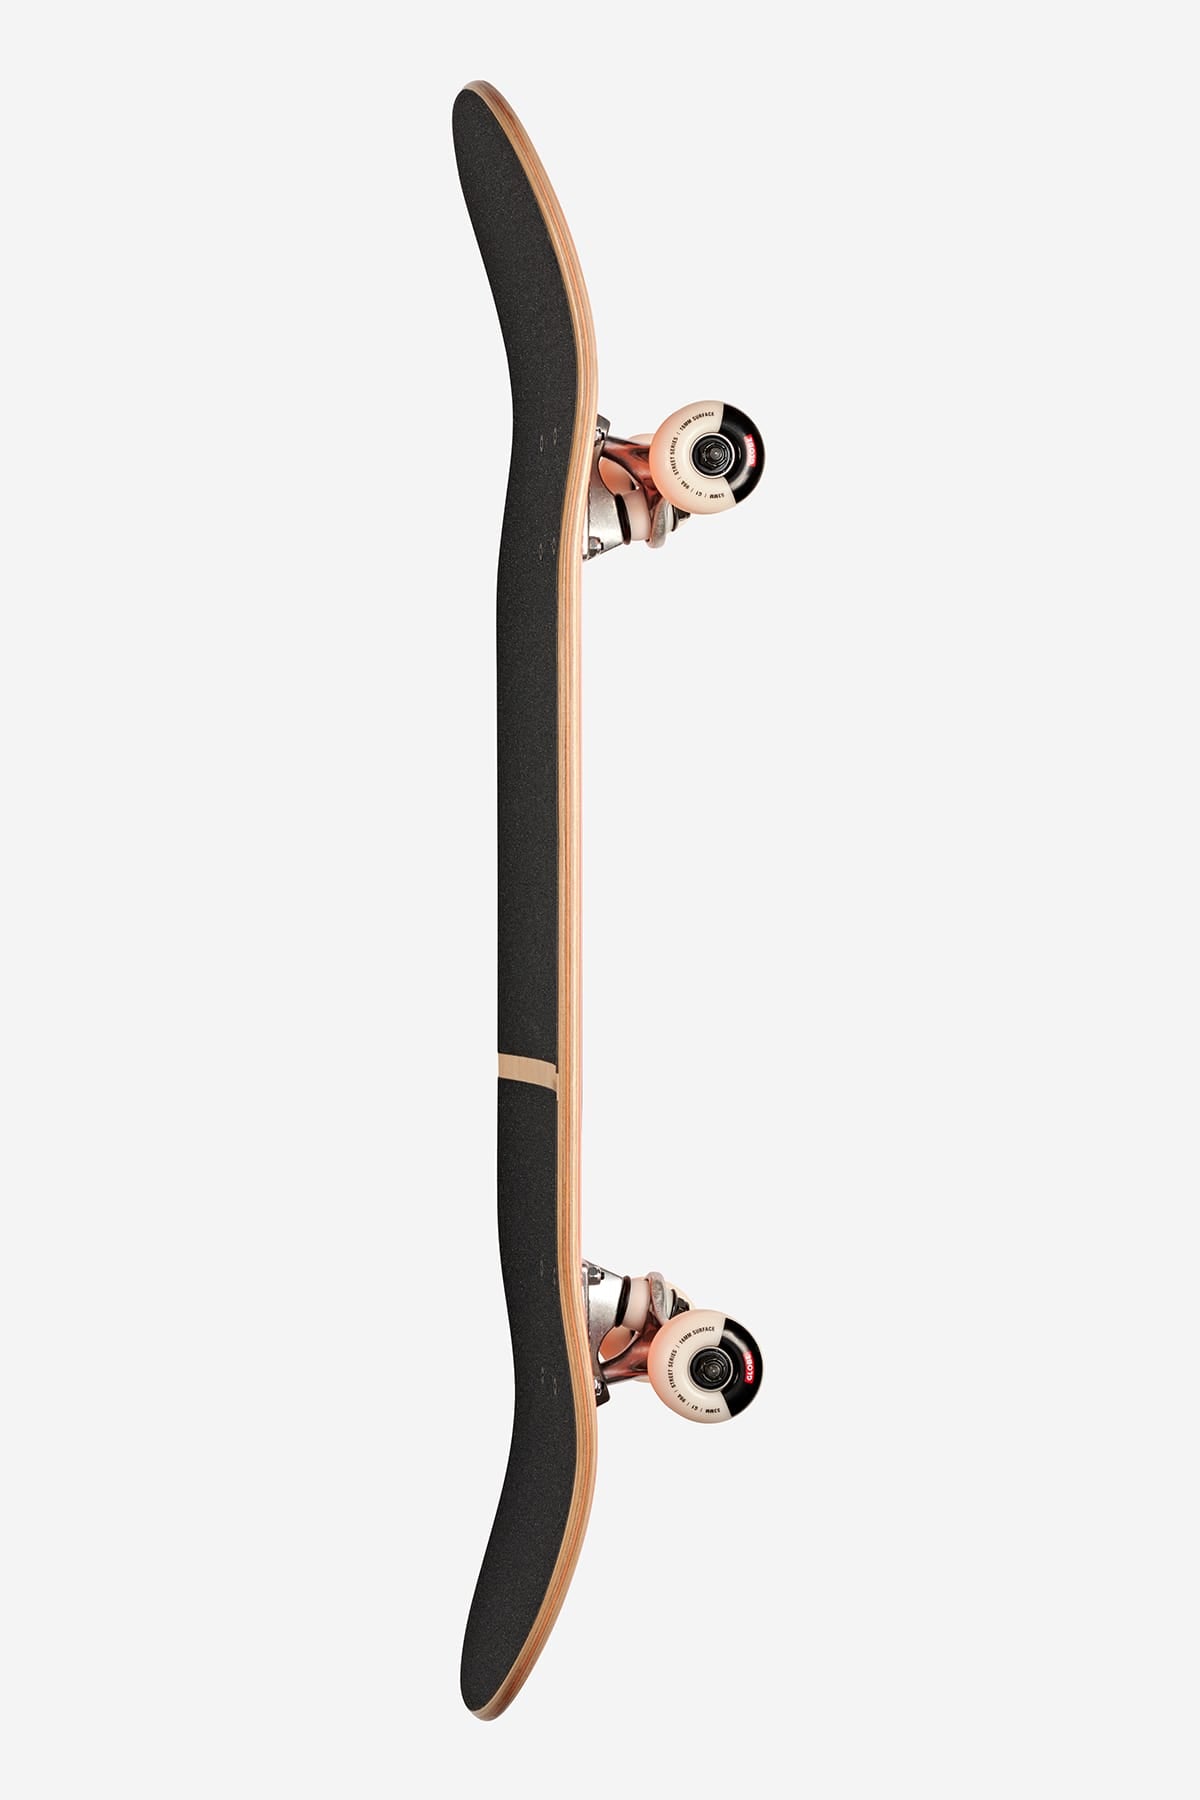 Globe - G1 Digital Nurture - Machine Made Man - 8.0" Complete Skateboard